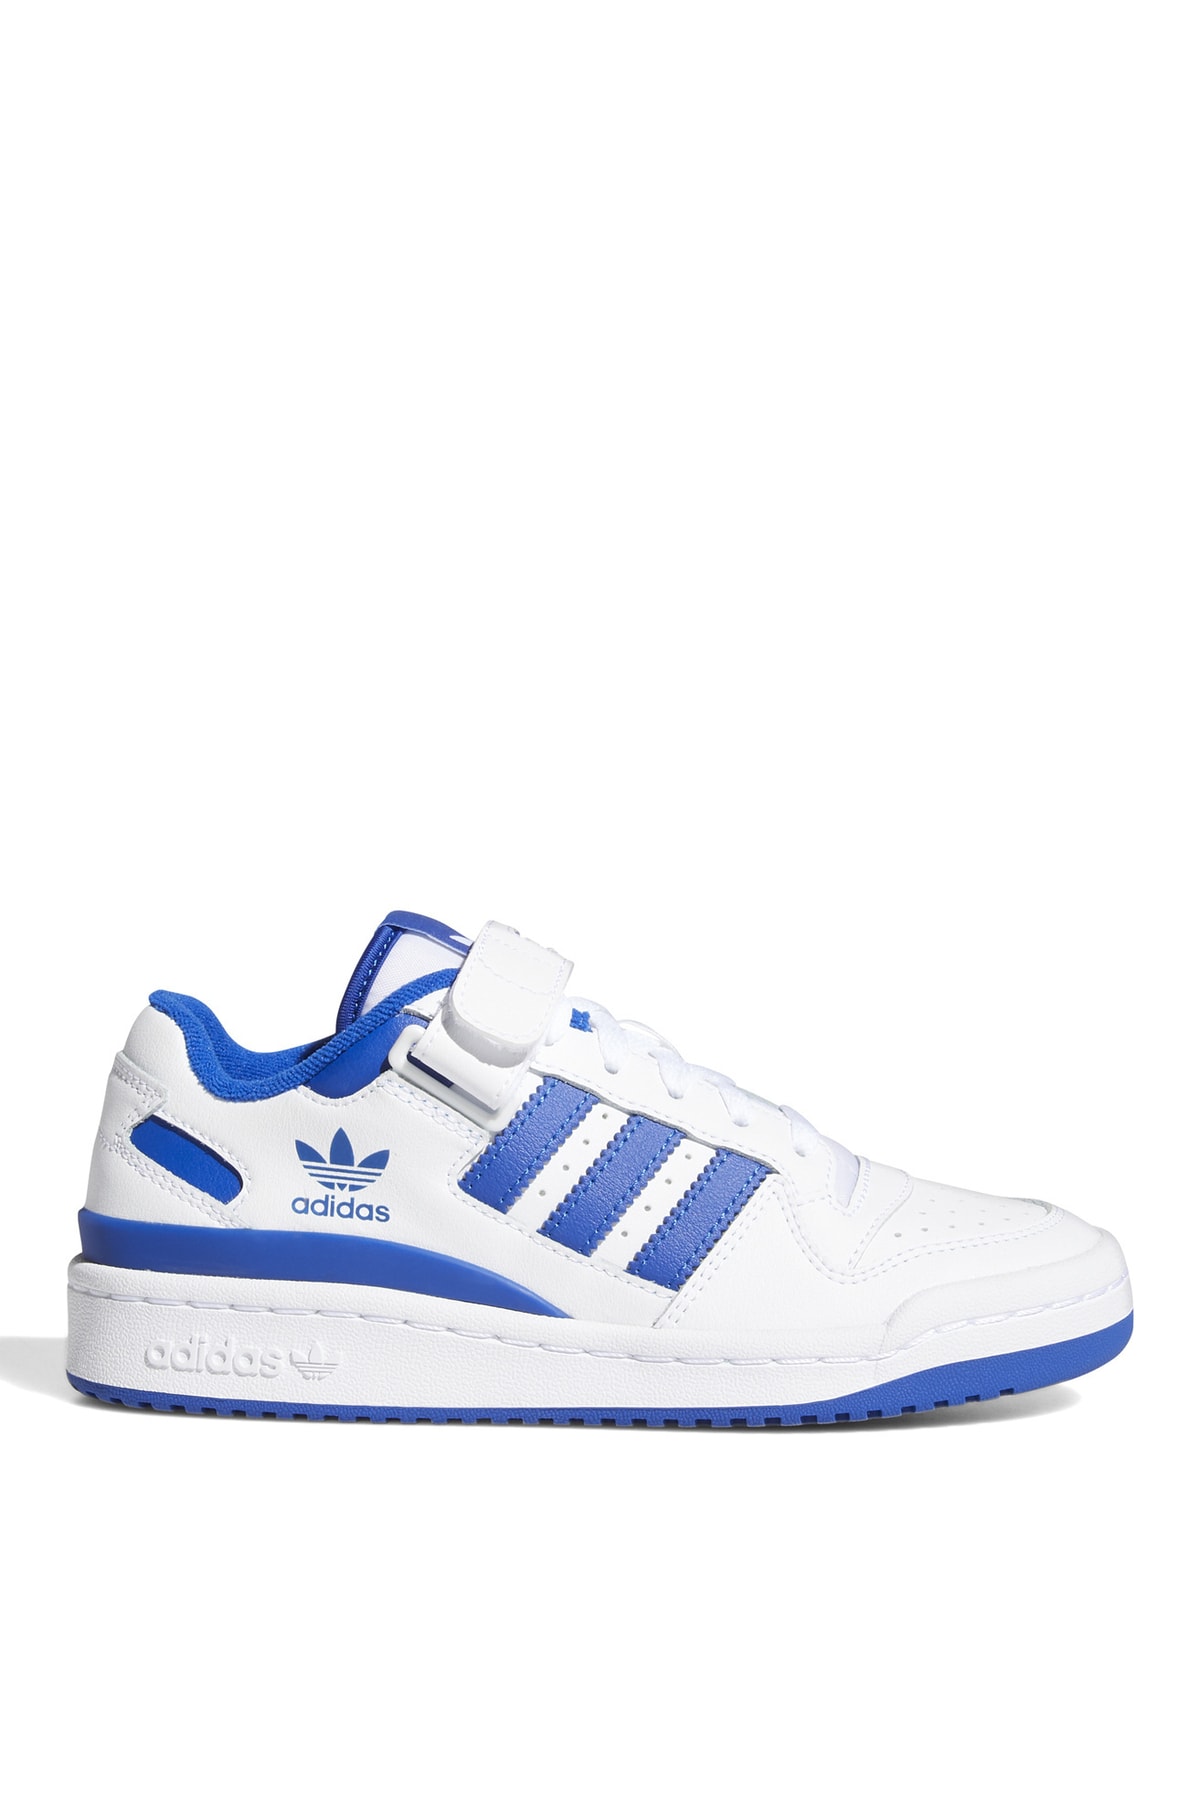 adidas Beyaz - Mavi Erkek Çocuk Basketbol Ayakkabısı Fy7974 Forum Low J